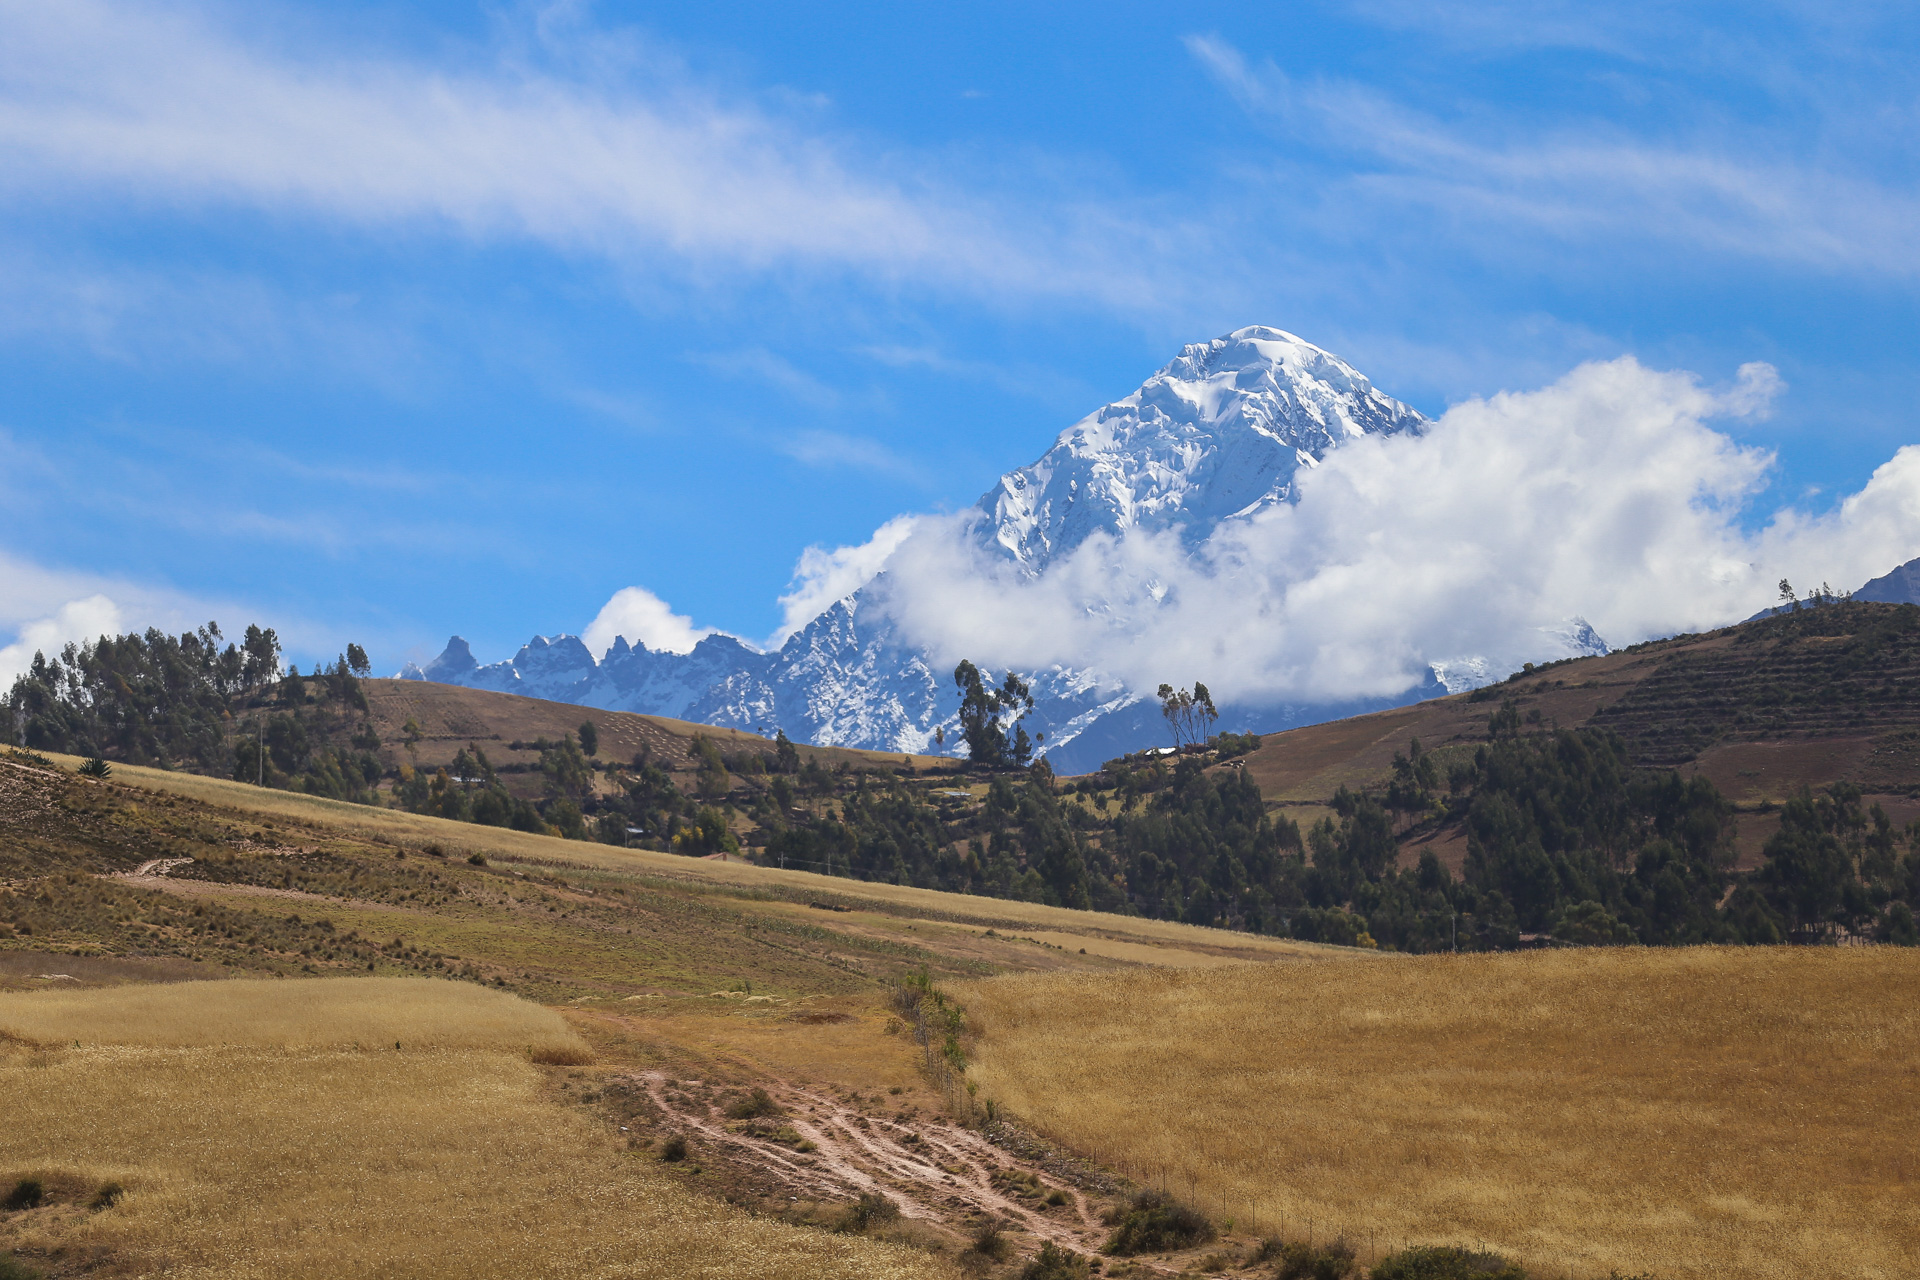  Le sommet de la Véronica, un sommet emblématique qui surplombe la vallée sacrée - De Cusco à Aguas Calientes